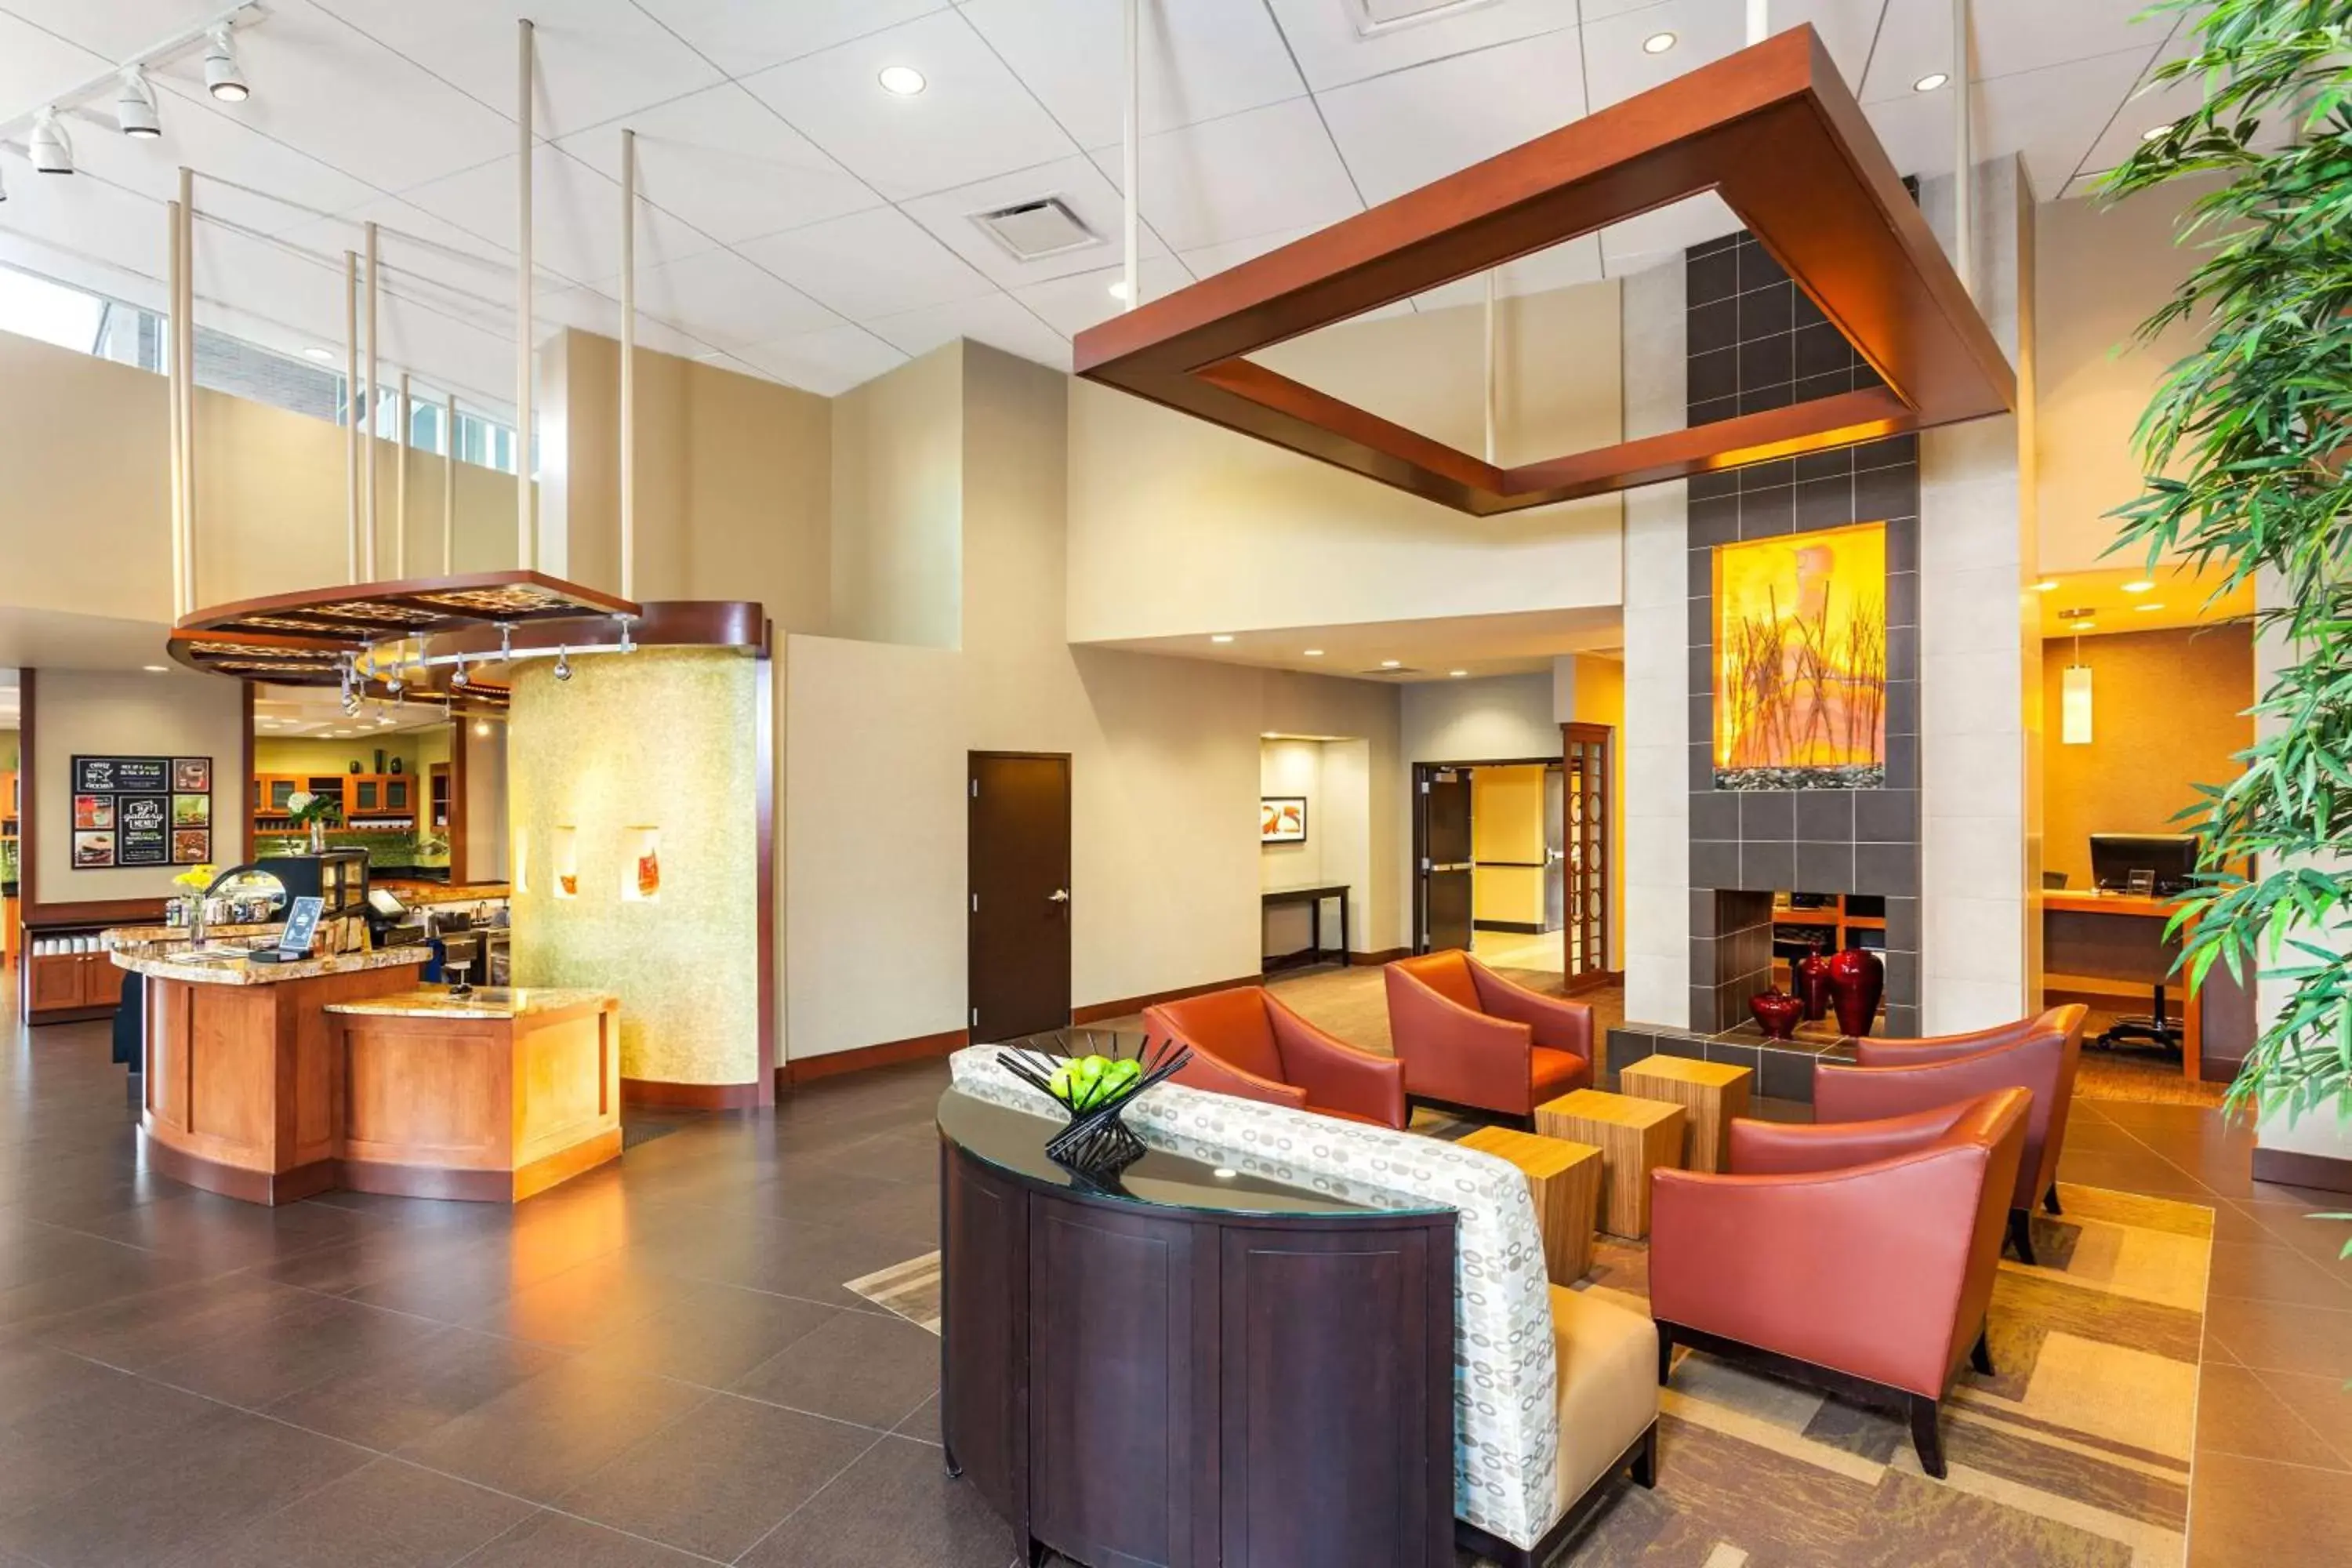 Lobby or reception in Hyatt Place San Diego-Vista/Carlsbad